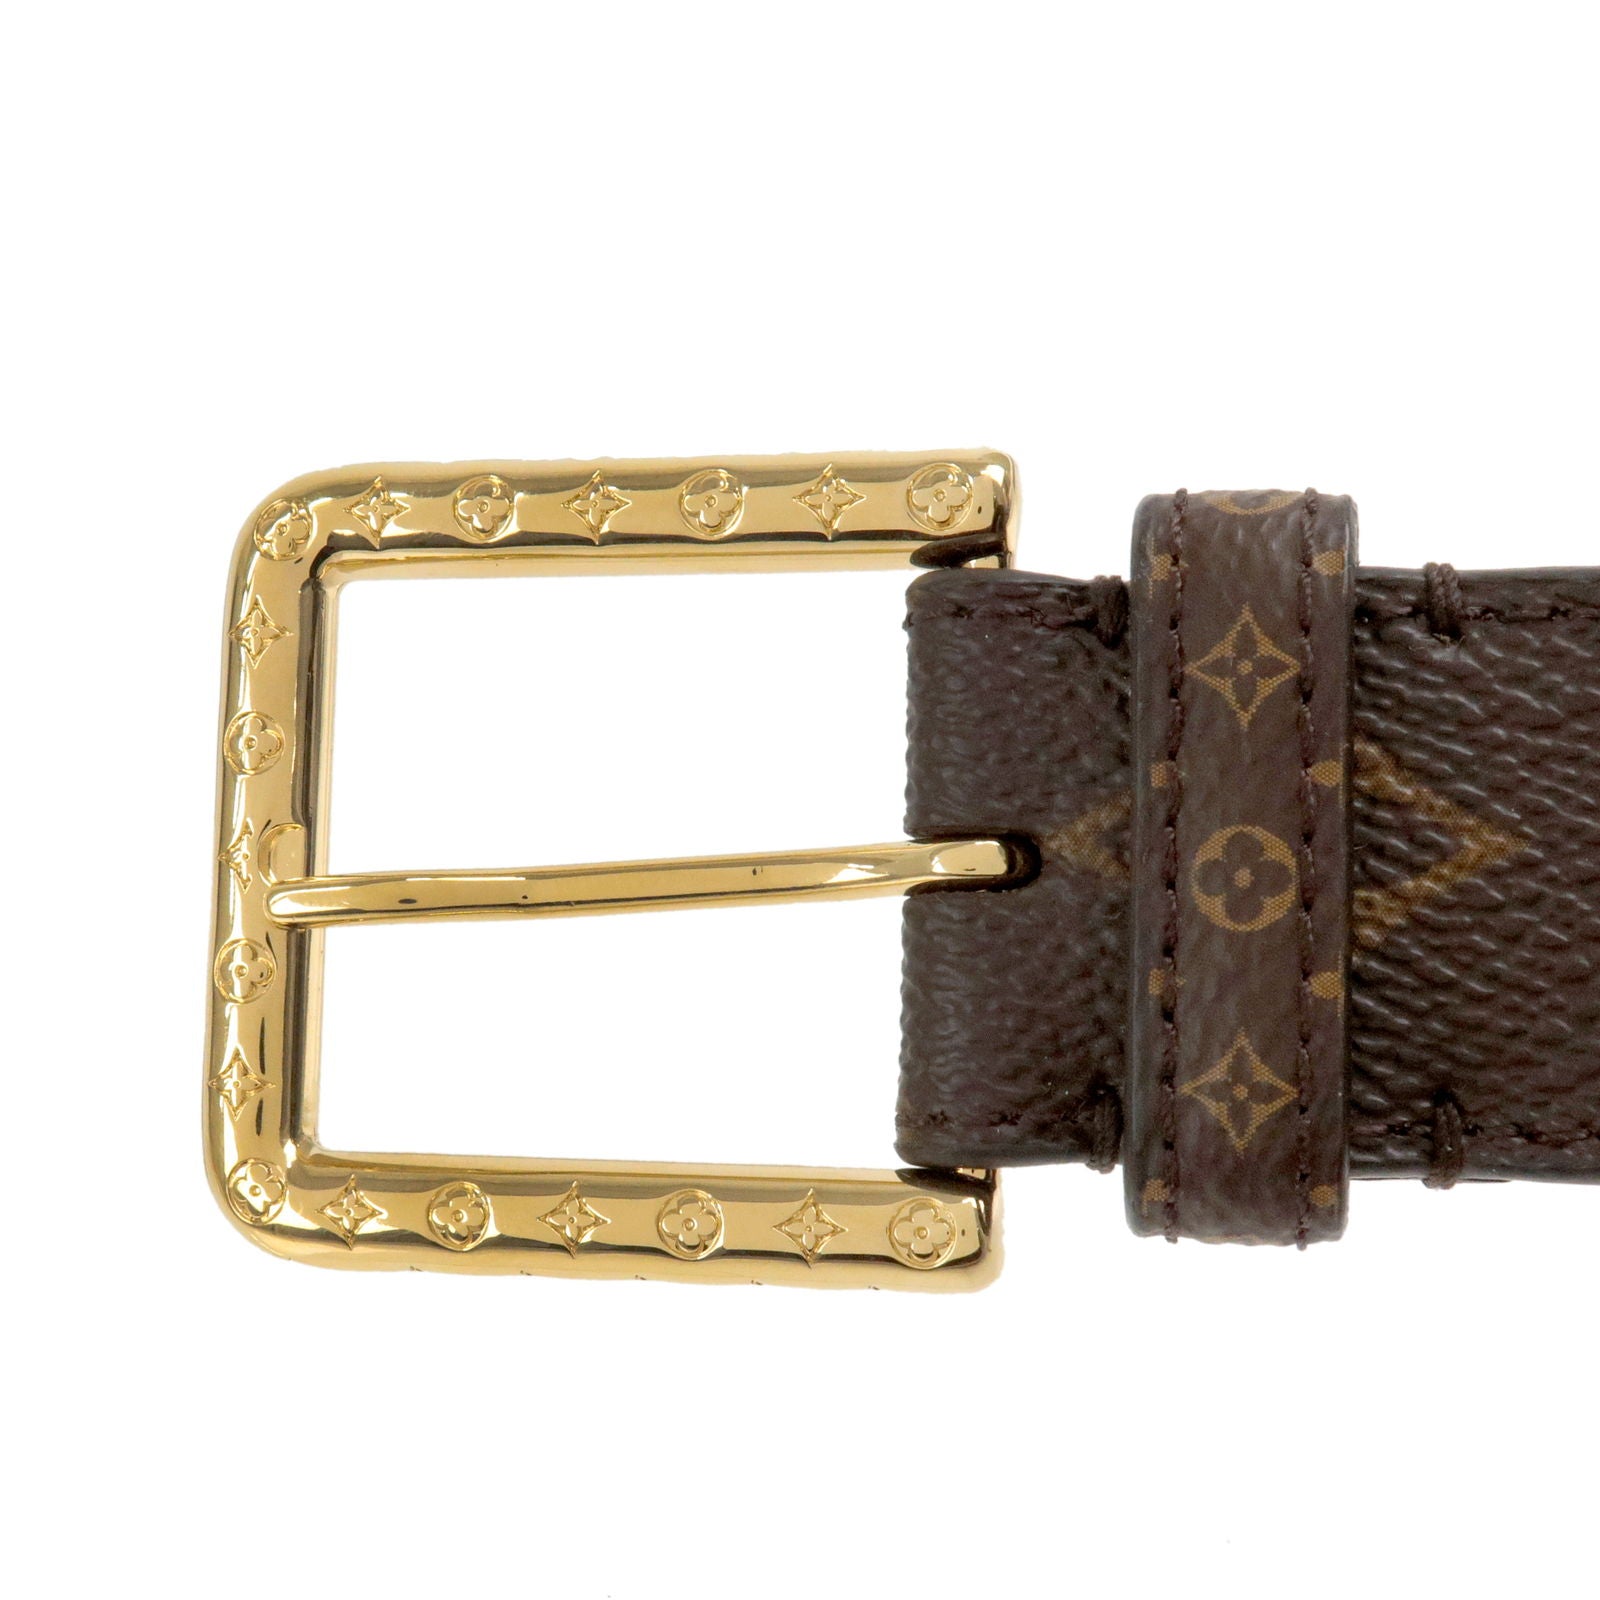 Louis Vuitton Nior belt. 100% authentic.